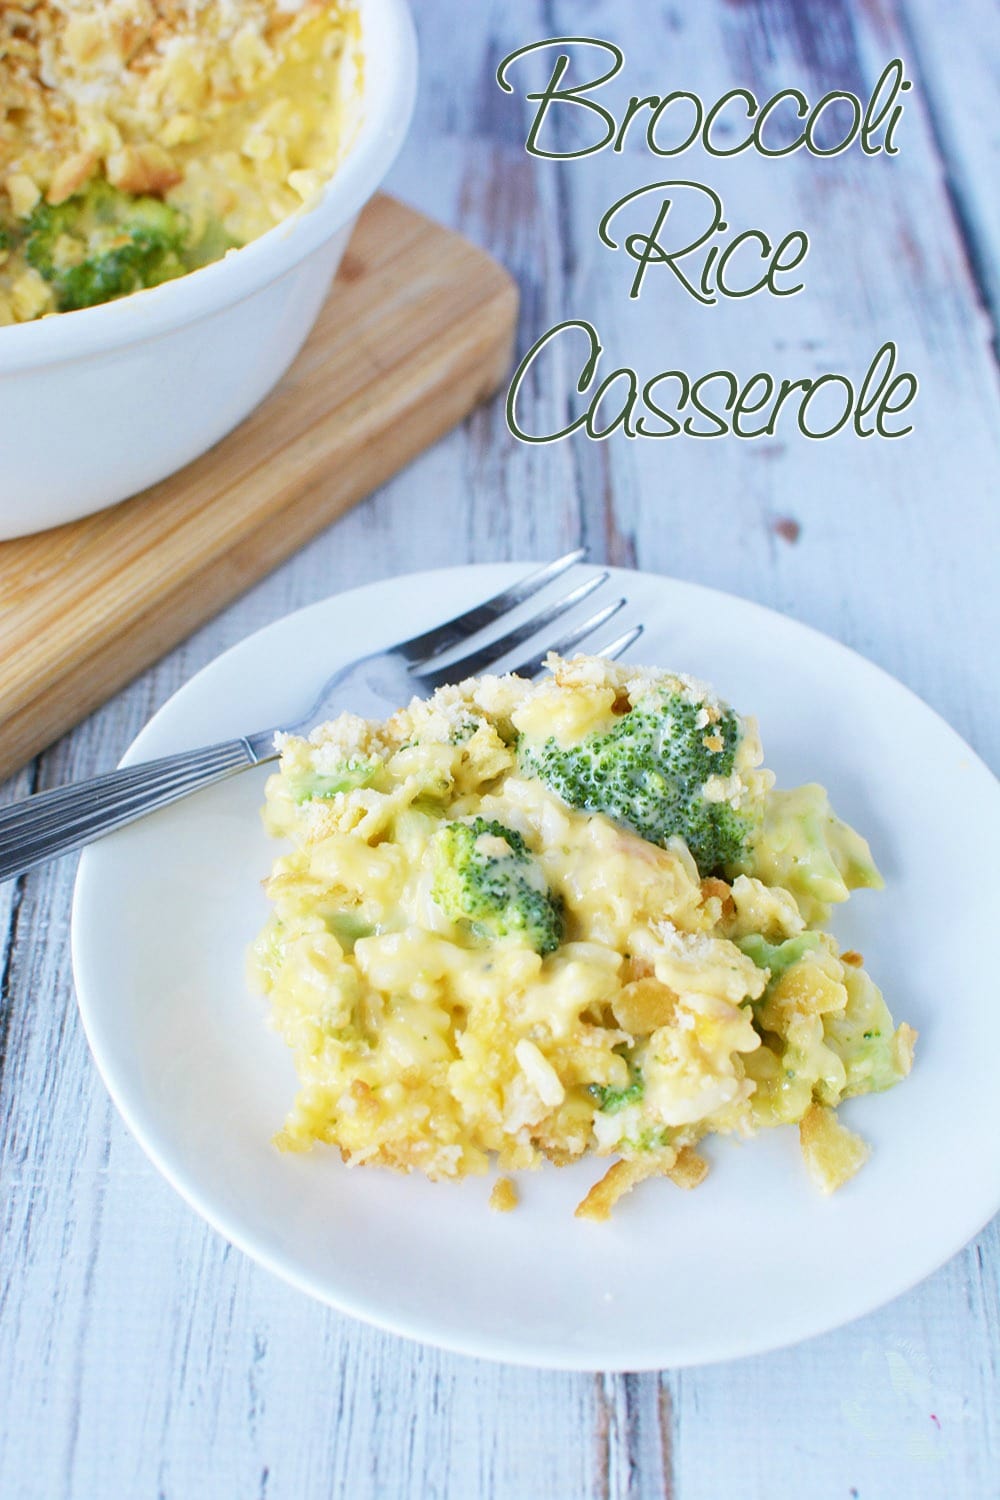 Broccoli, cheese, rice casserole recipe